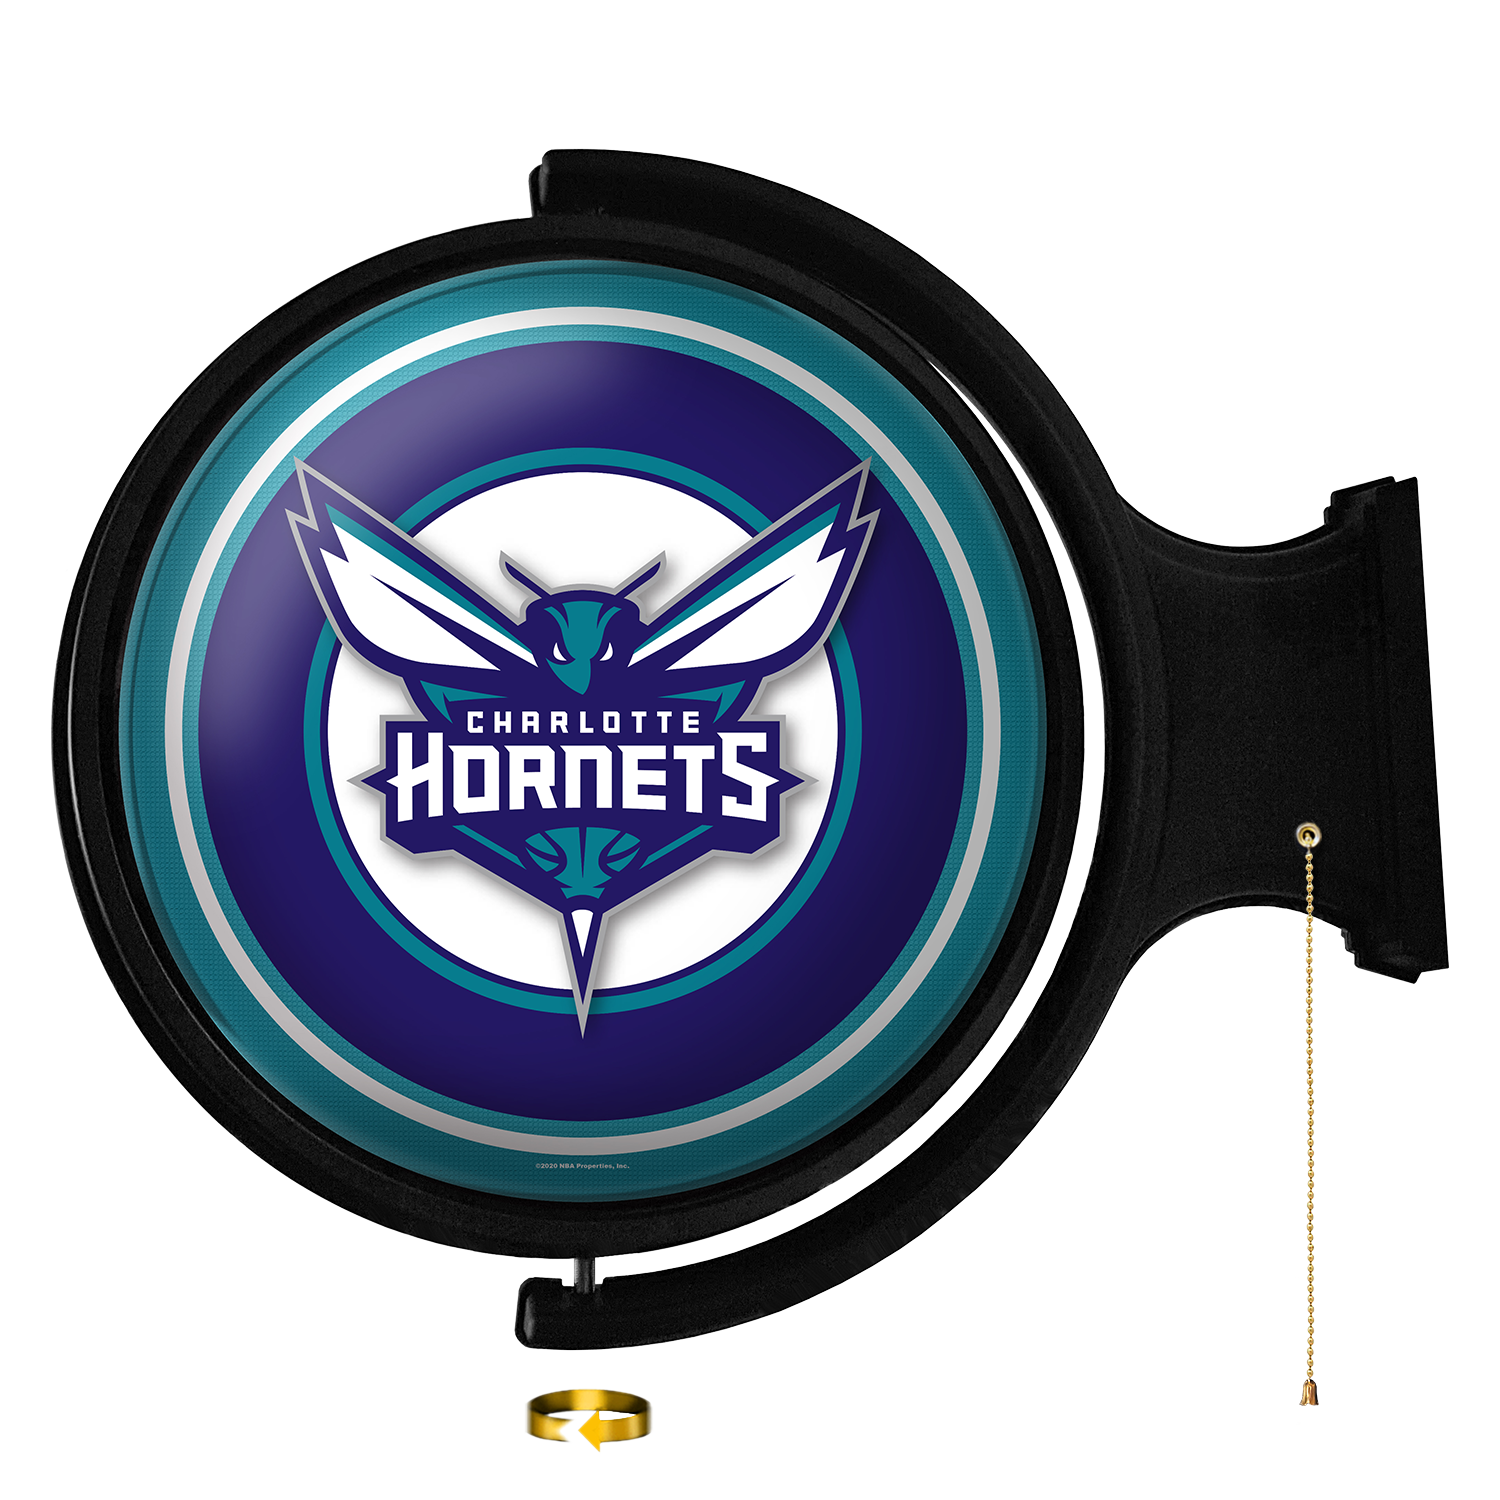 Charlotte Hornets on Twitter: The Hornets Fan Shop Sidewalk Sale